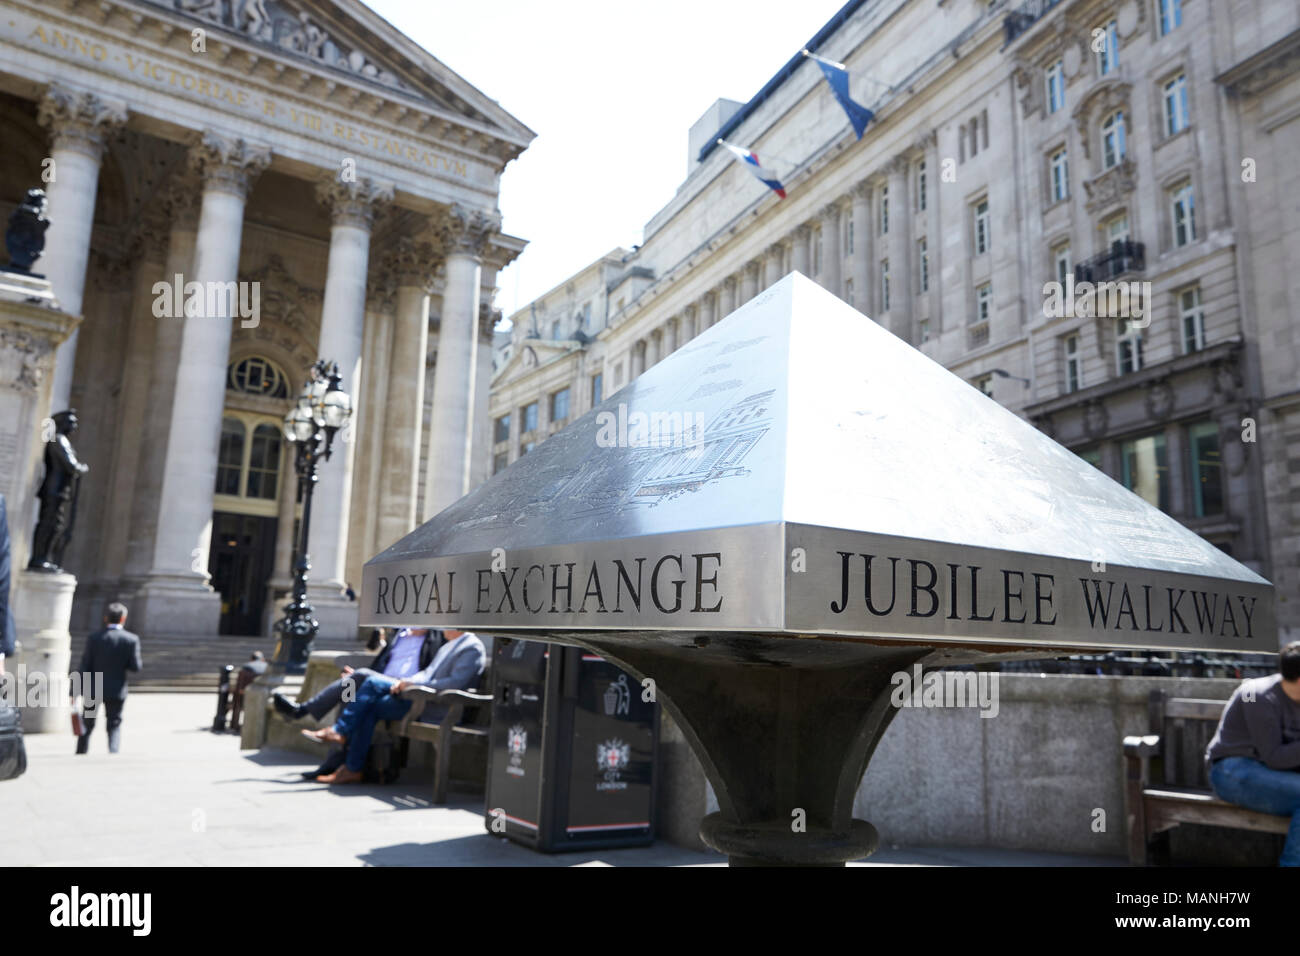 Londres - Mai 2017 : Royal Exchange building, gauche, et Jubilee Walkway signe, Royal Exchange Square, London, EC3. Banque D'Images